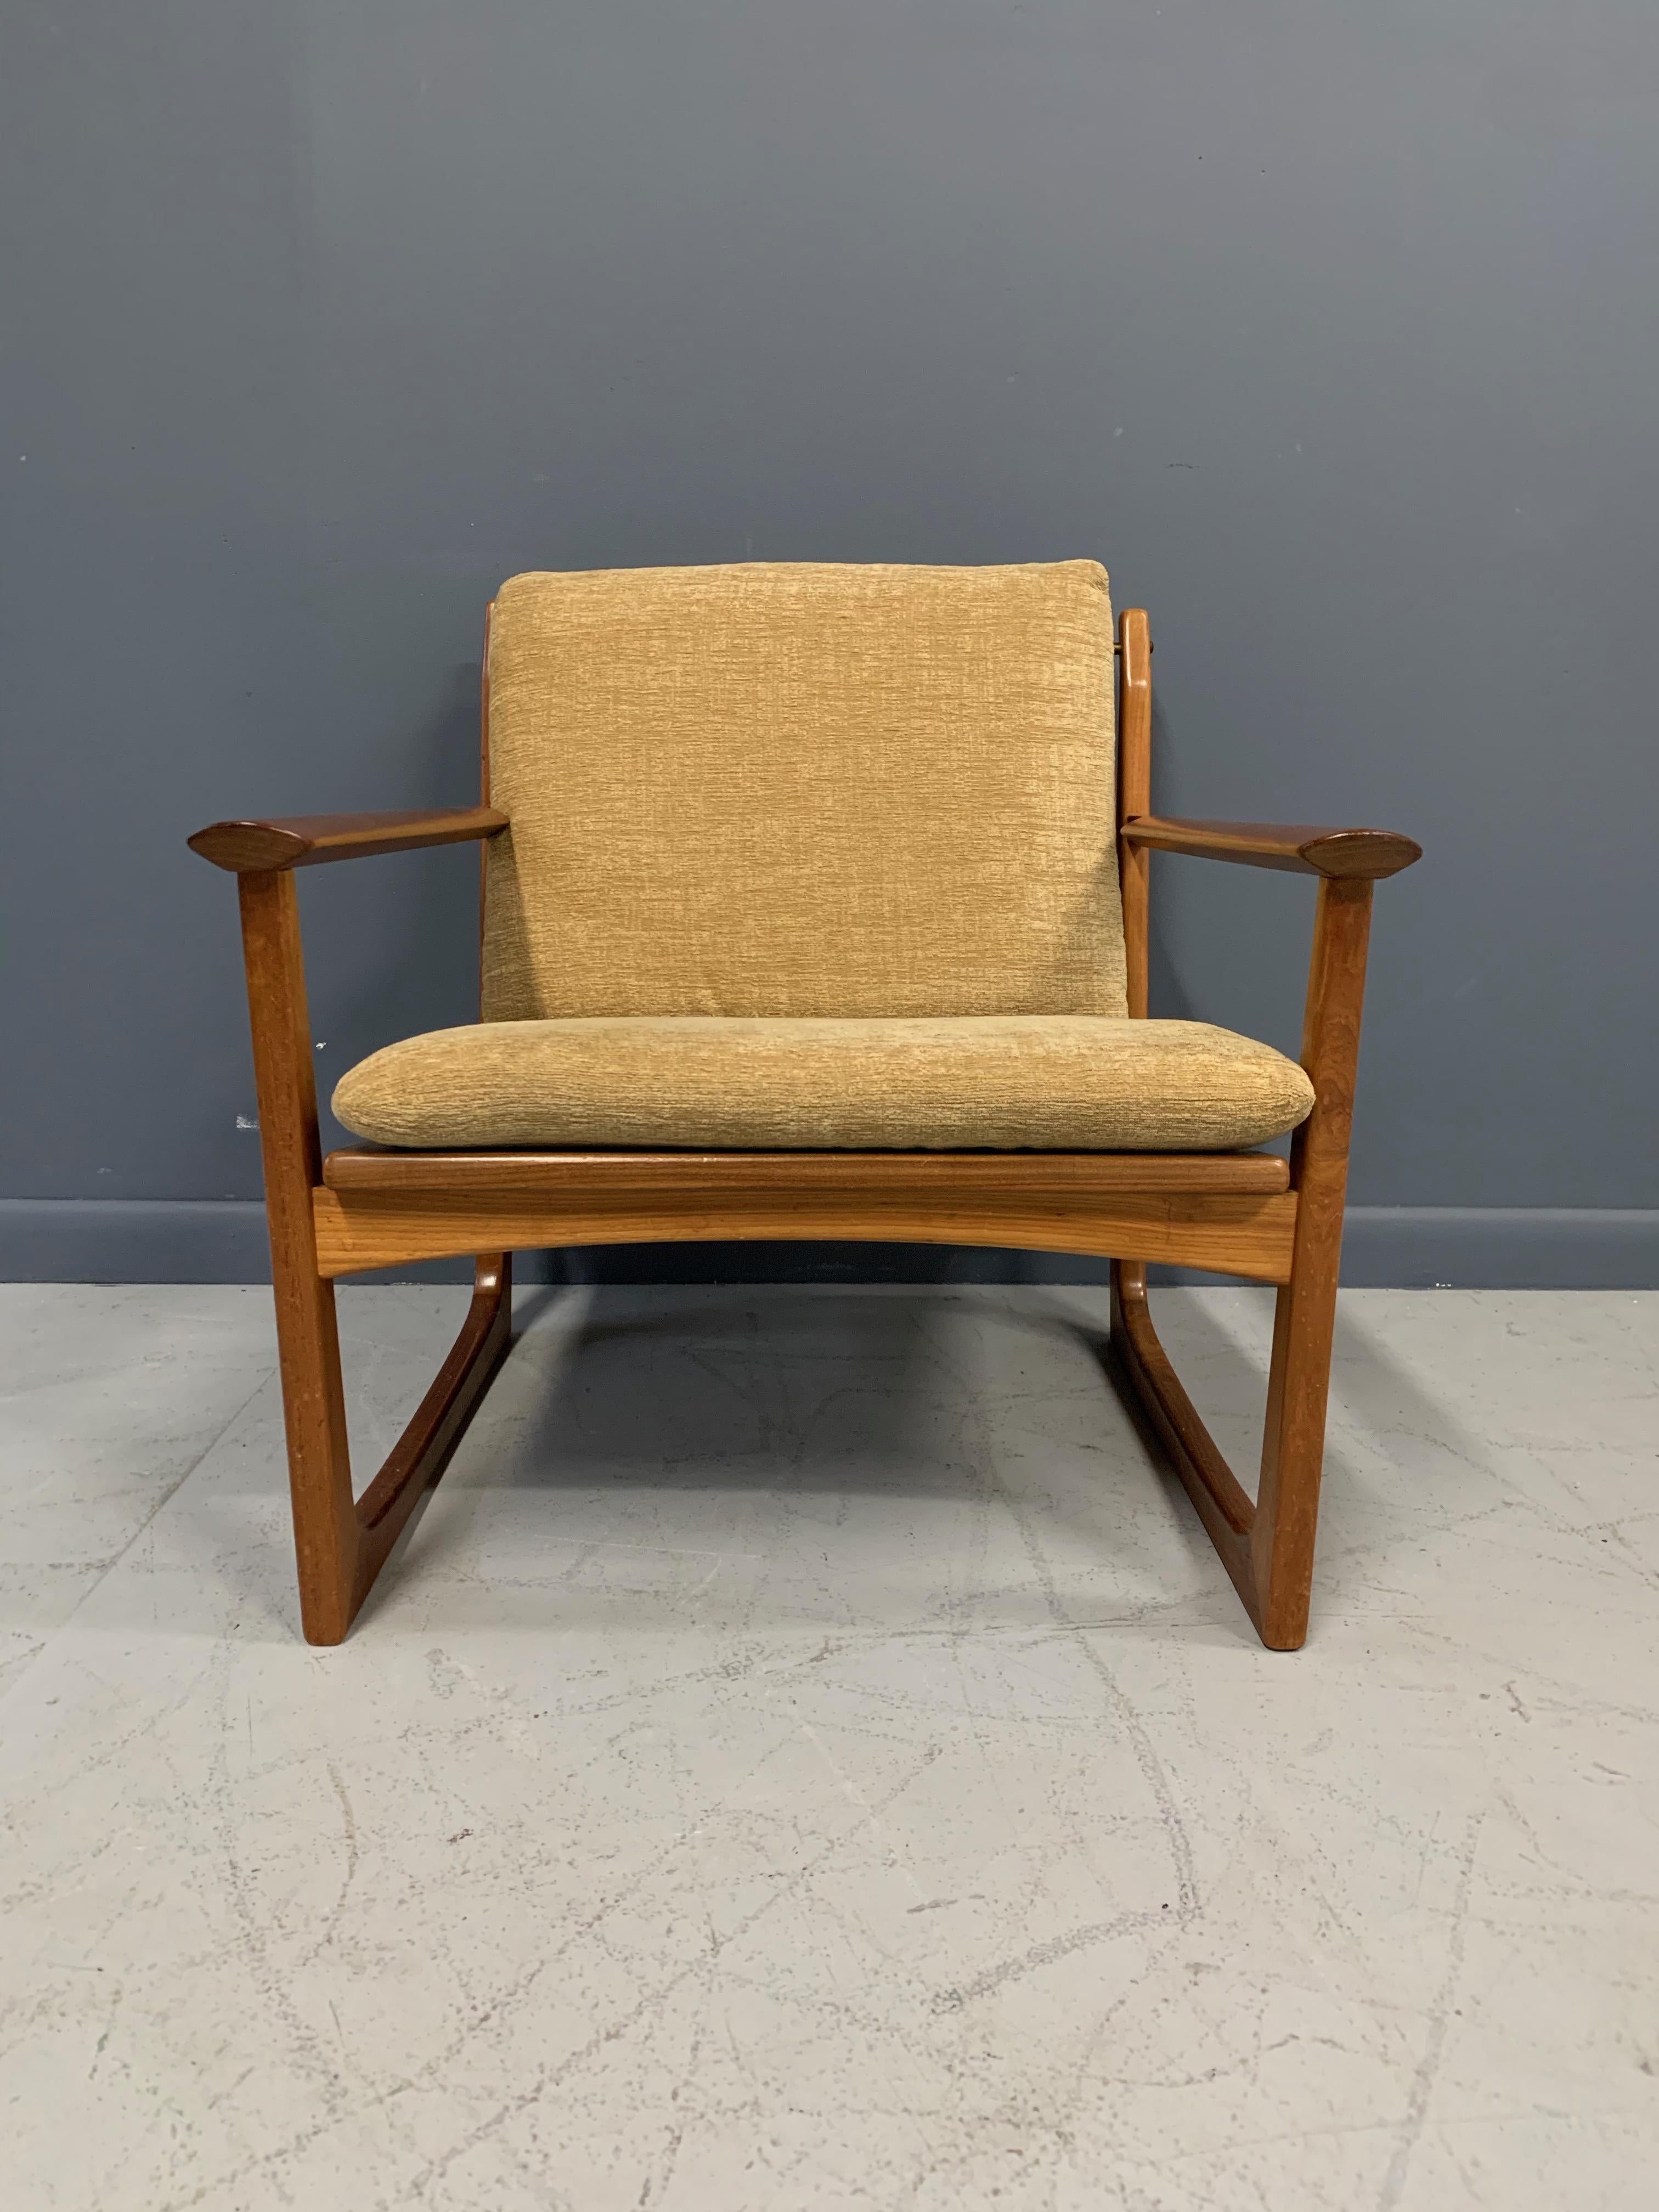 Hans Olsen Teak and Cane Lounge Chair for Juul Kristensen Midcentury 1